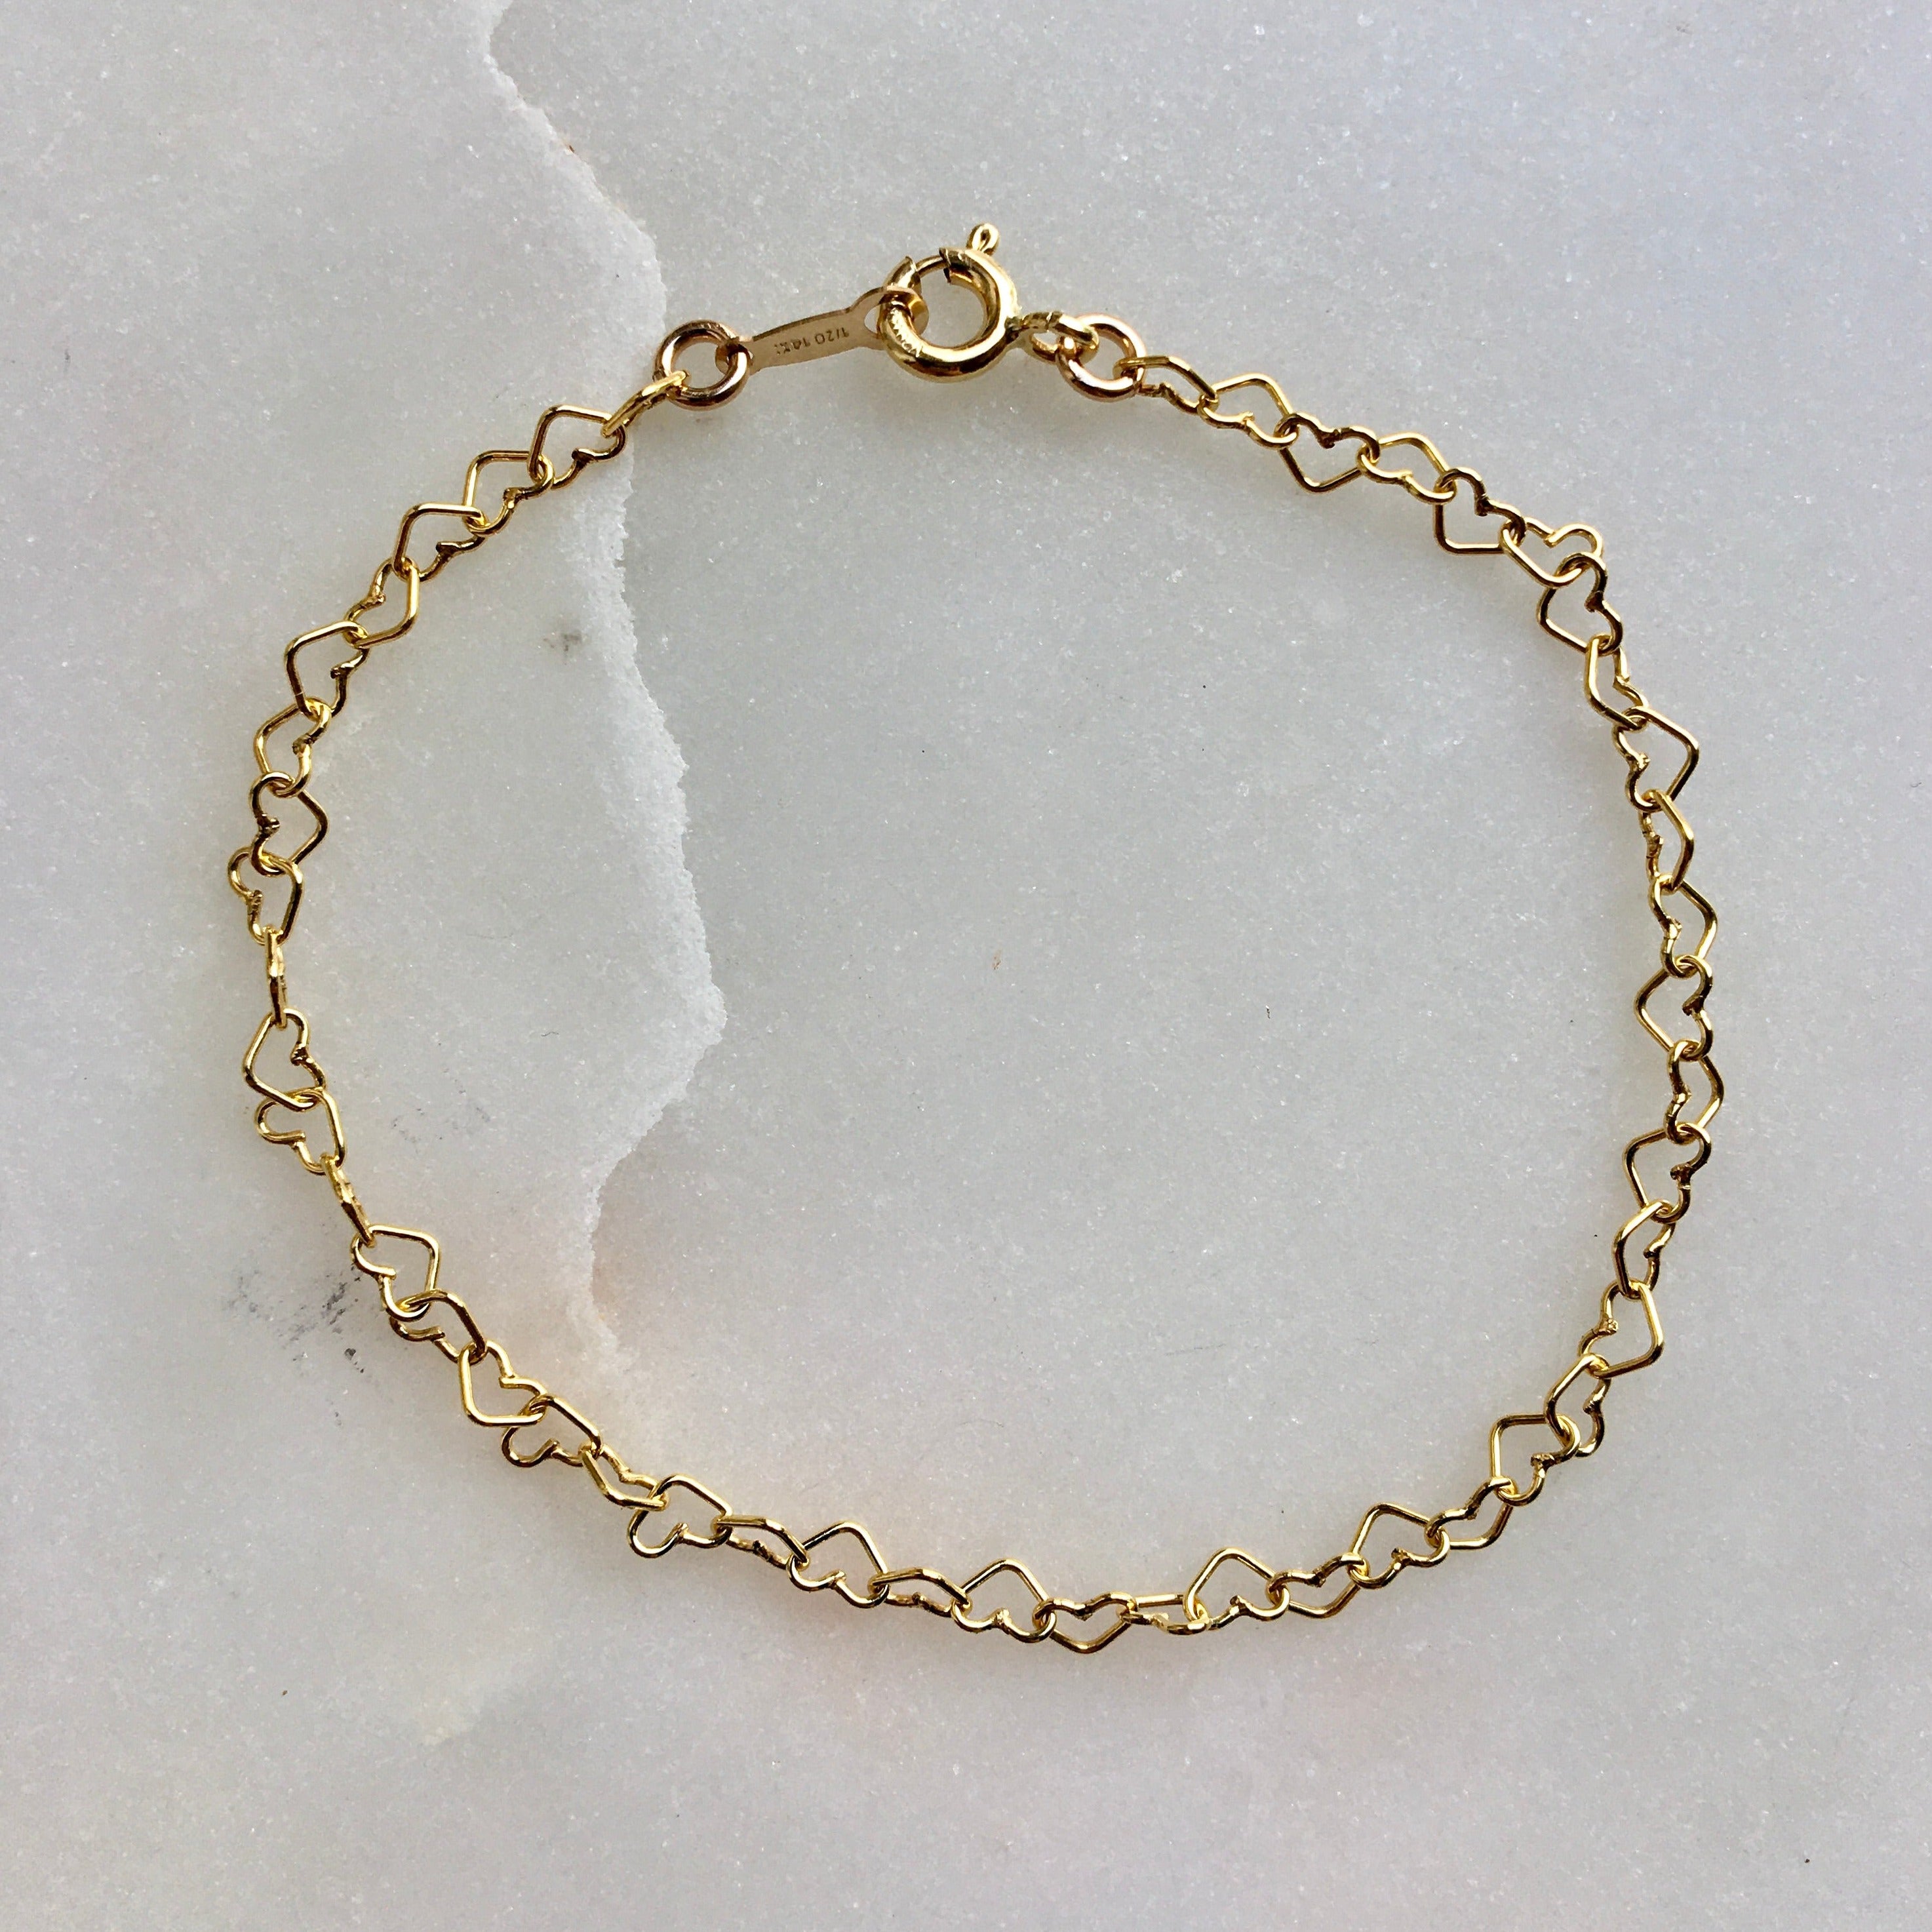 Buy New Model Heart Design Gold Plated Bracelet for Ladies